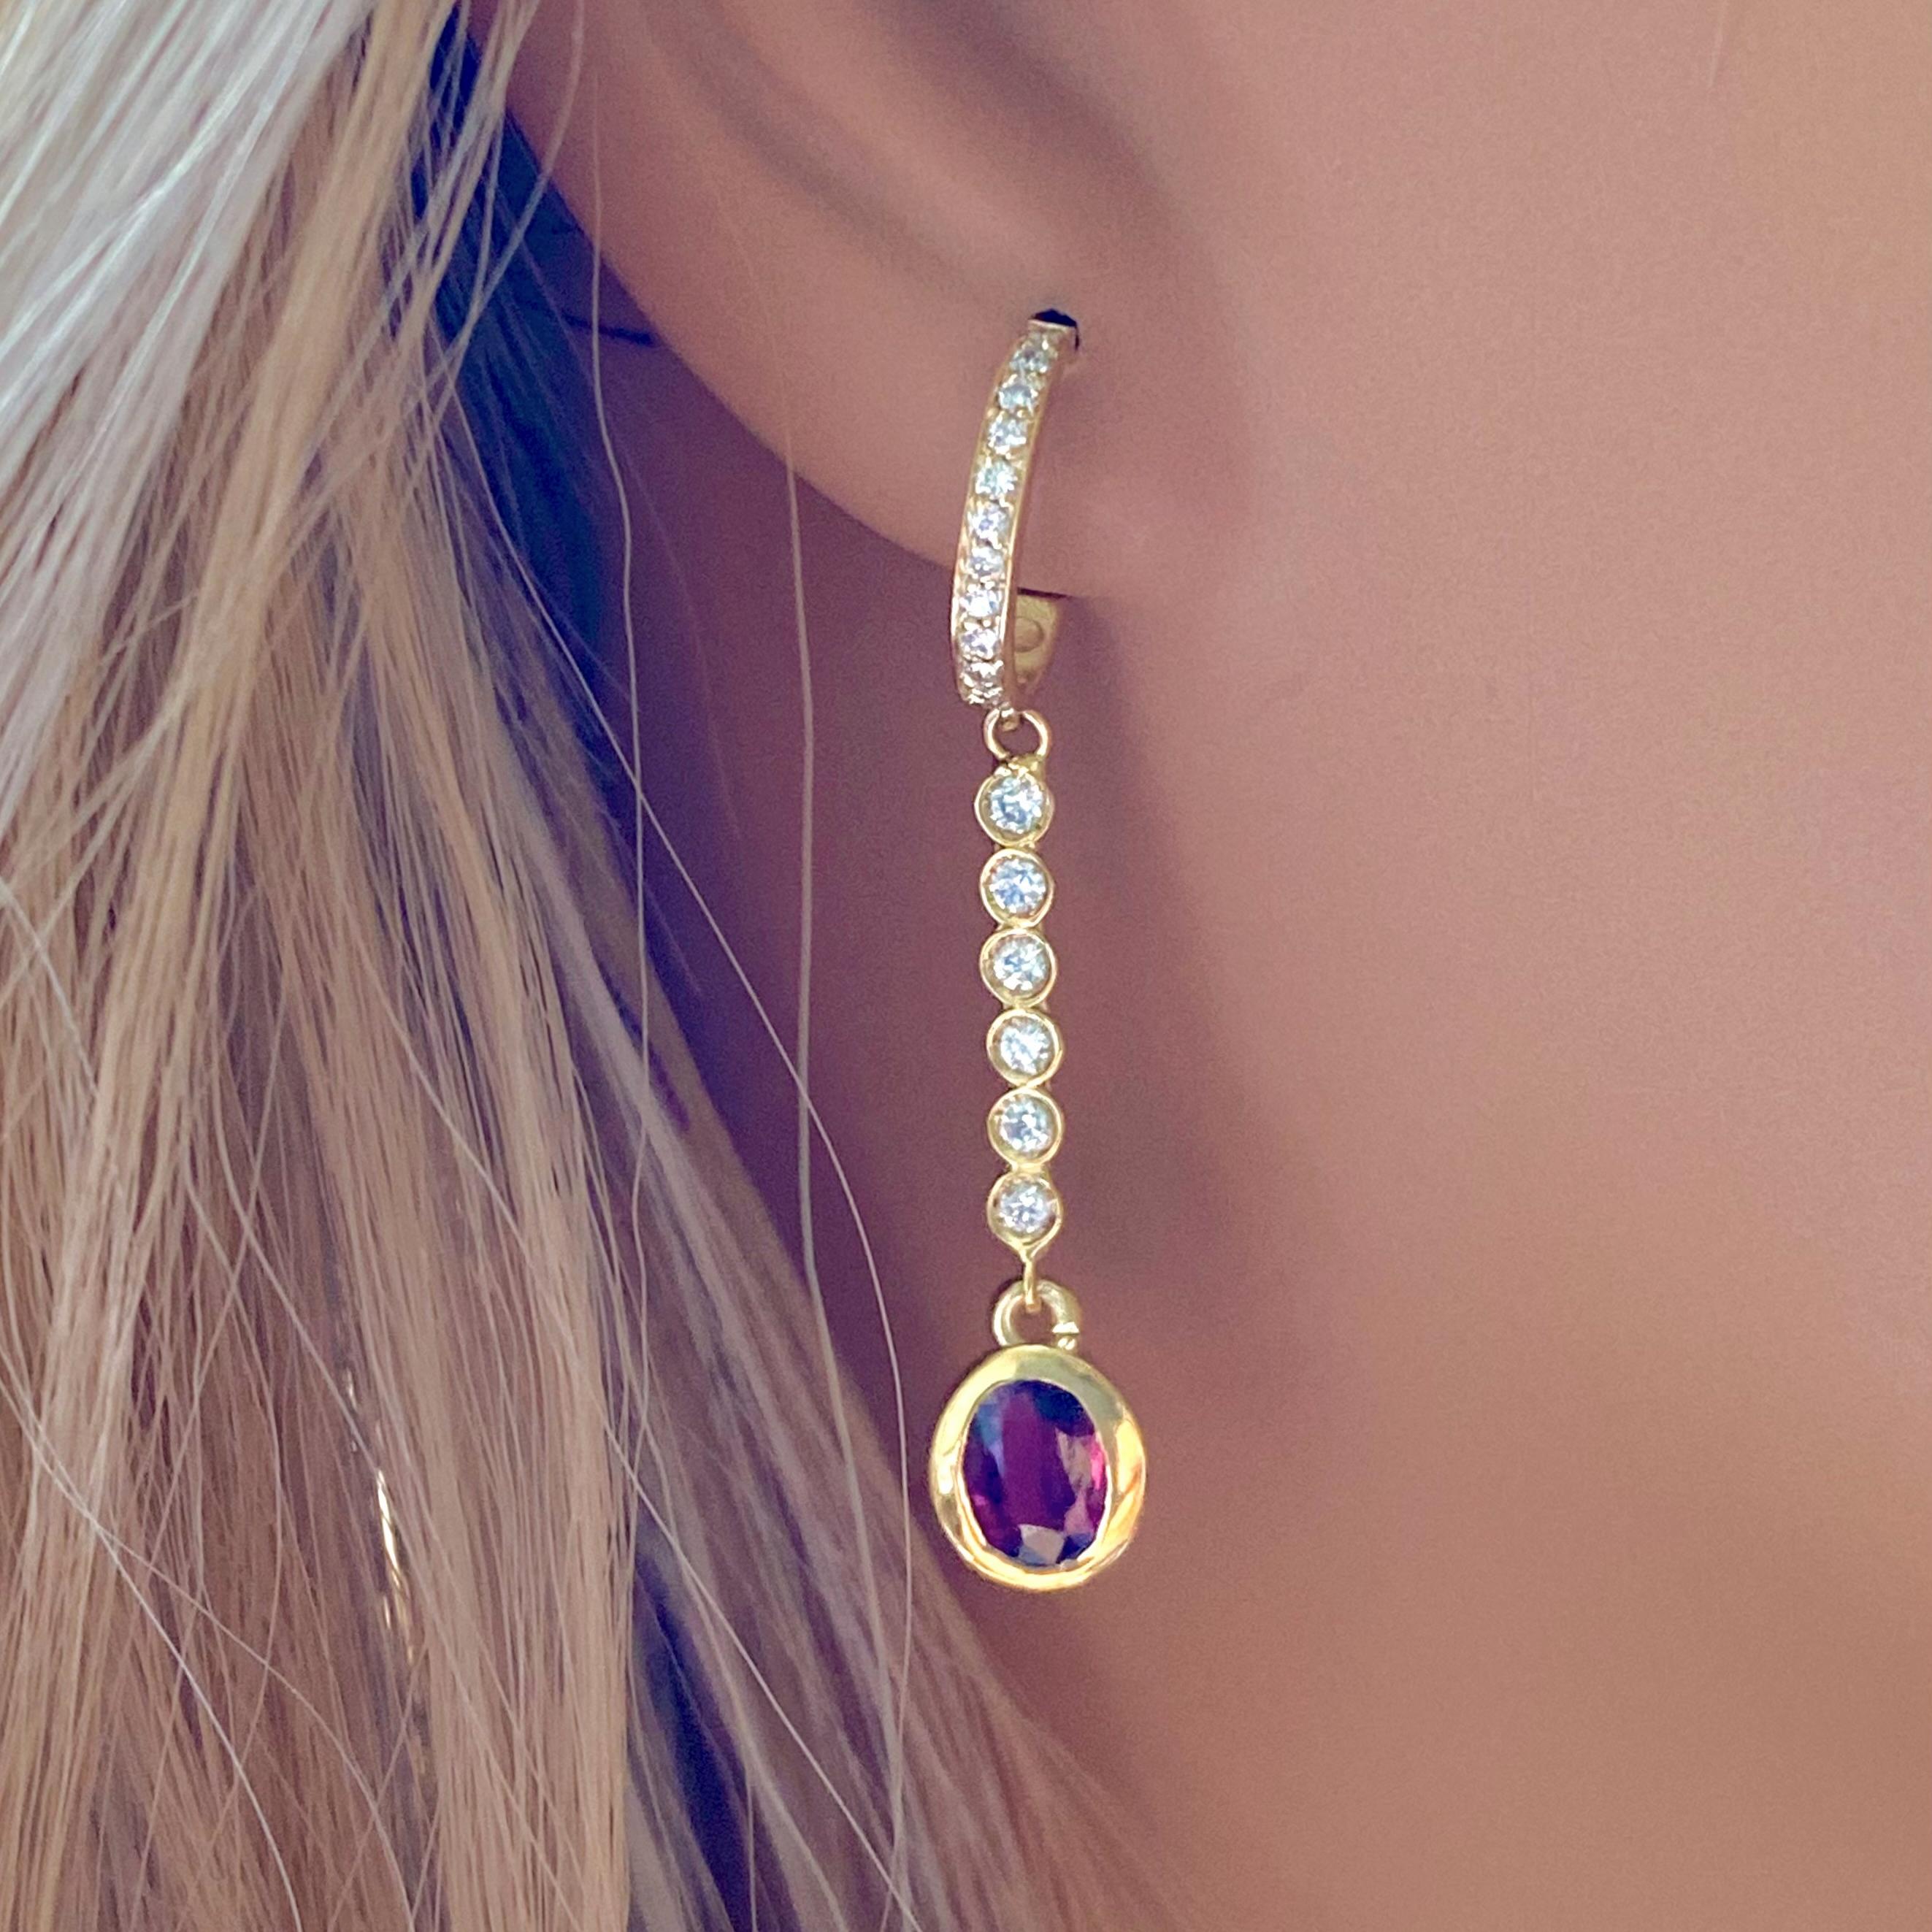 Bezel Set Burma Ruby Diamond 1.75 Carat 1.6 Inch Long Yellow Gold Earrings For Sale 1